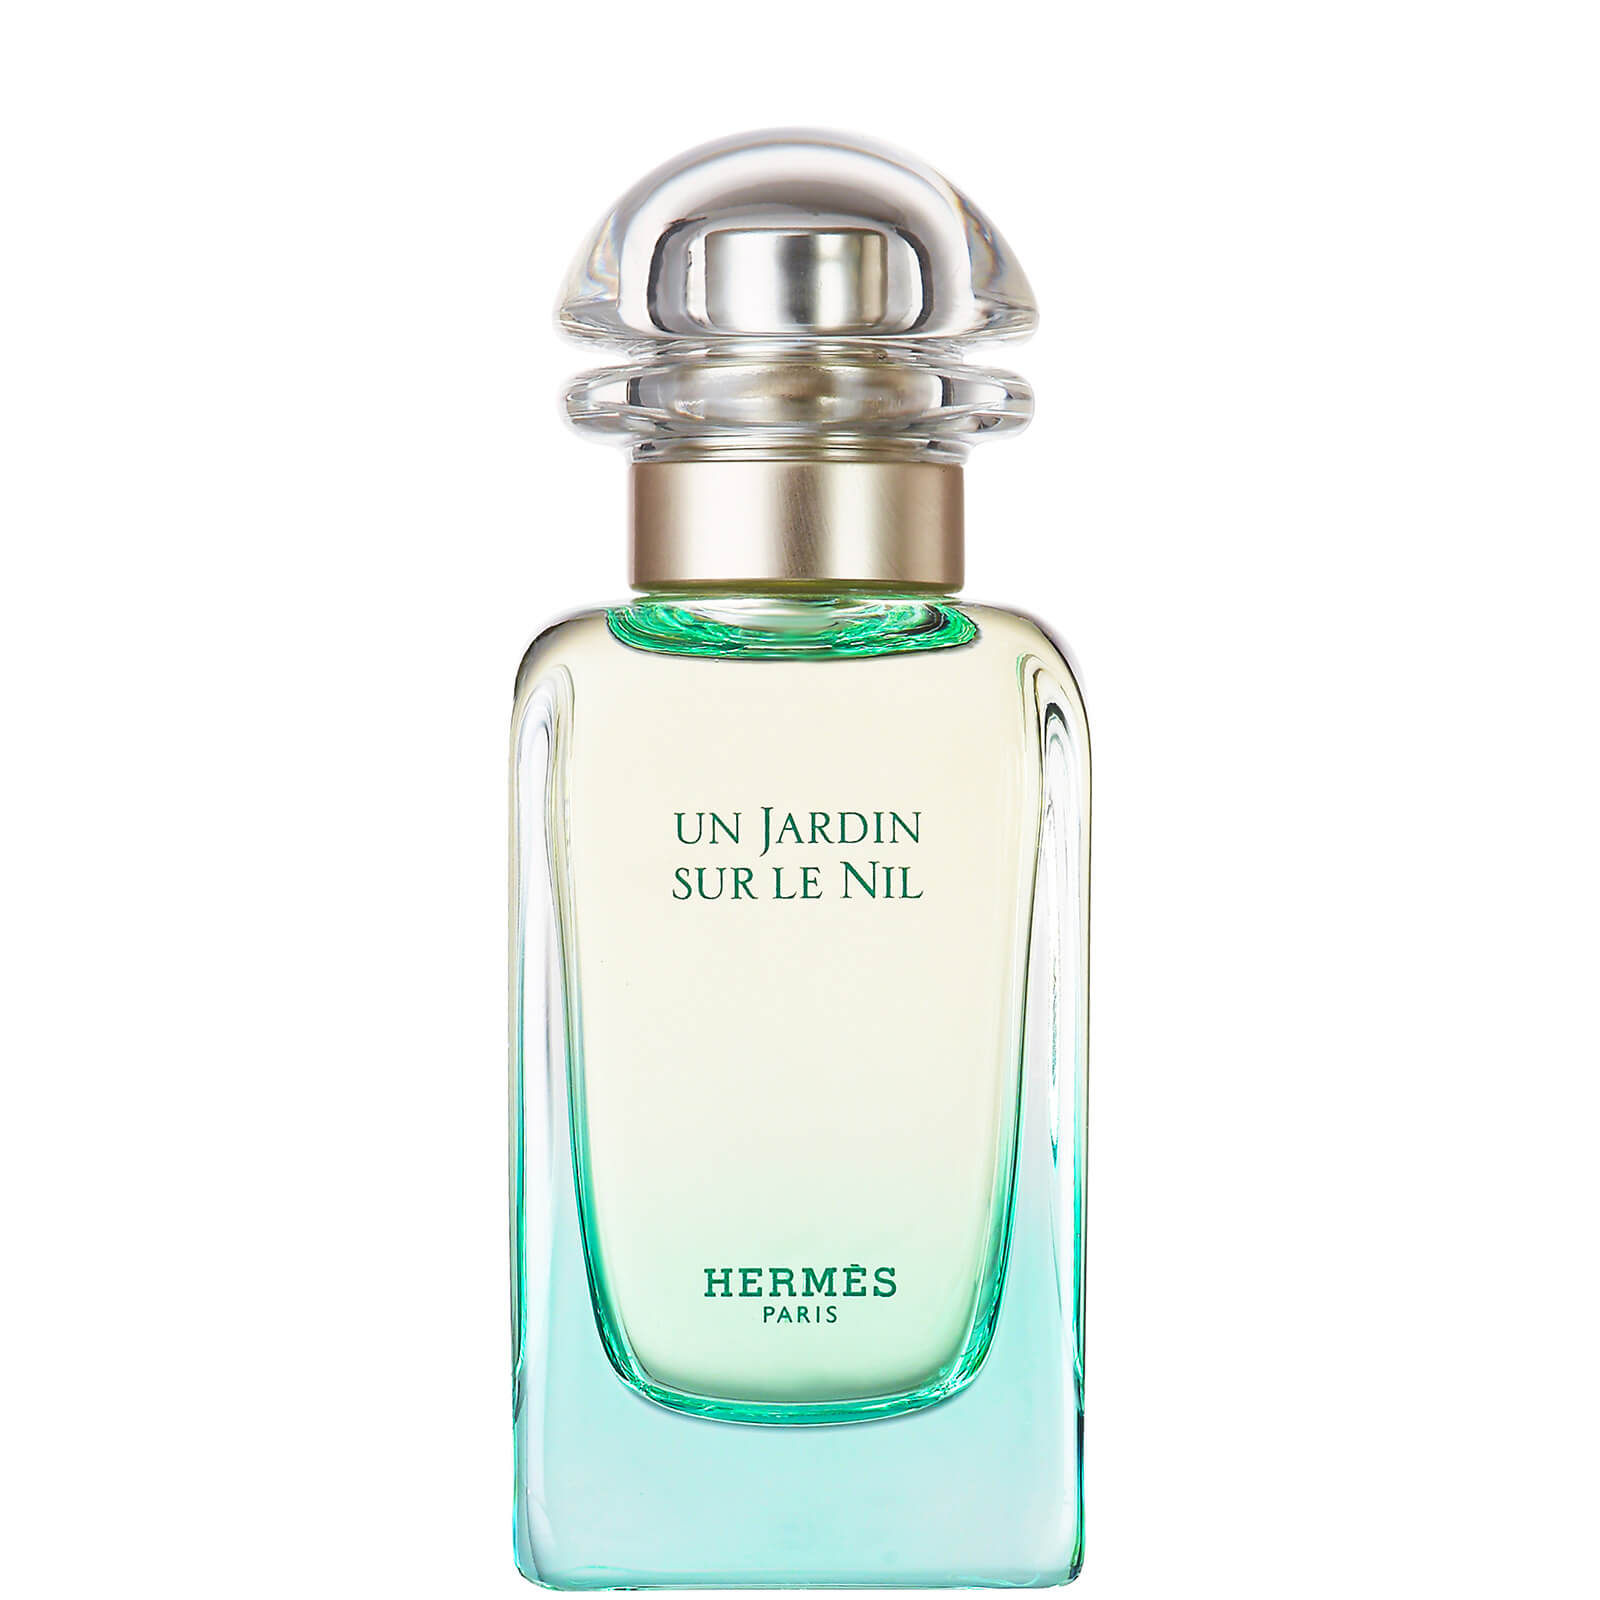 Photos - Women's Fragrance Hermes Hermès Un Jardin Sur Le Nil Eau de Toilette 50ml 20397 